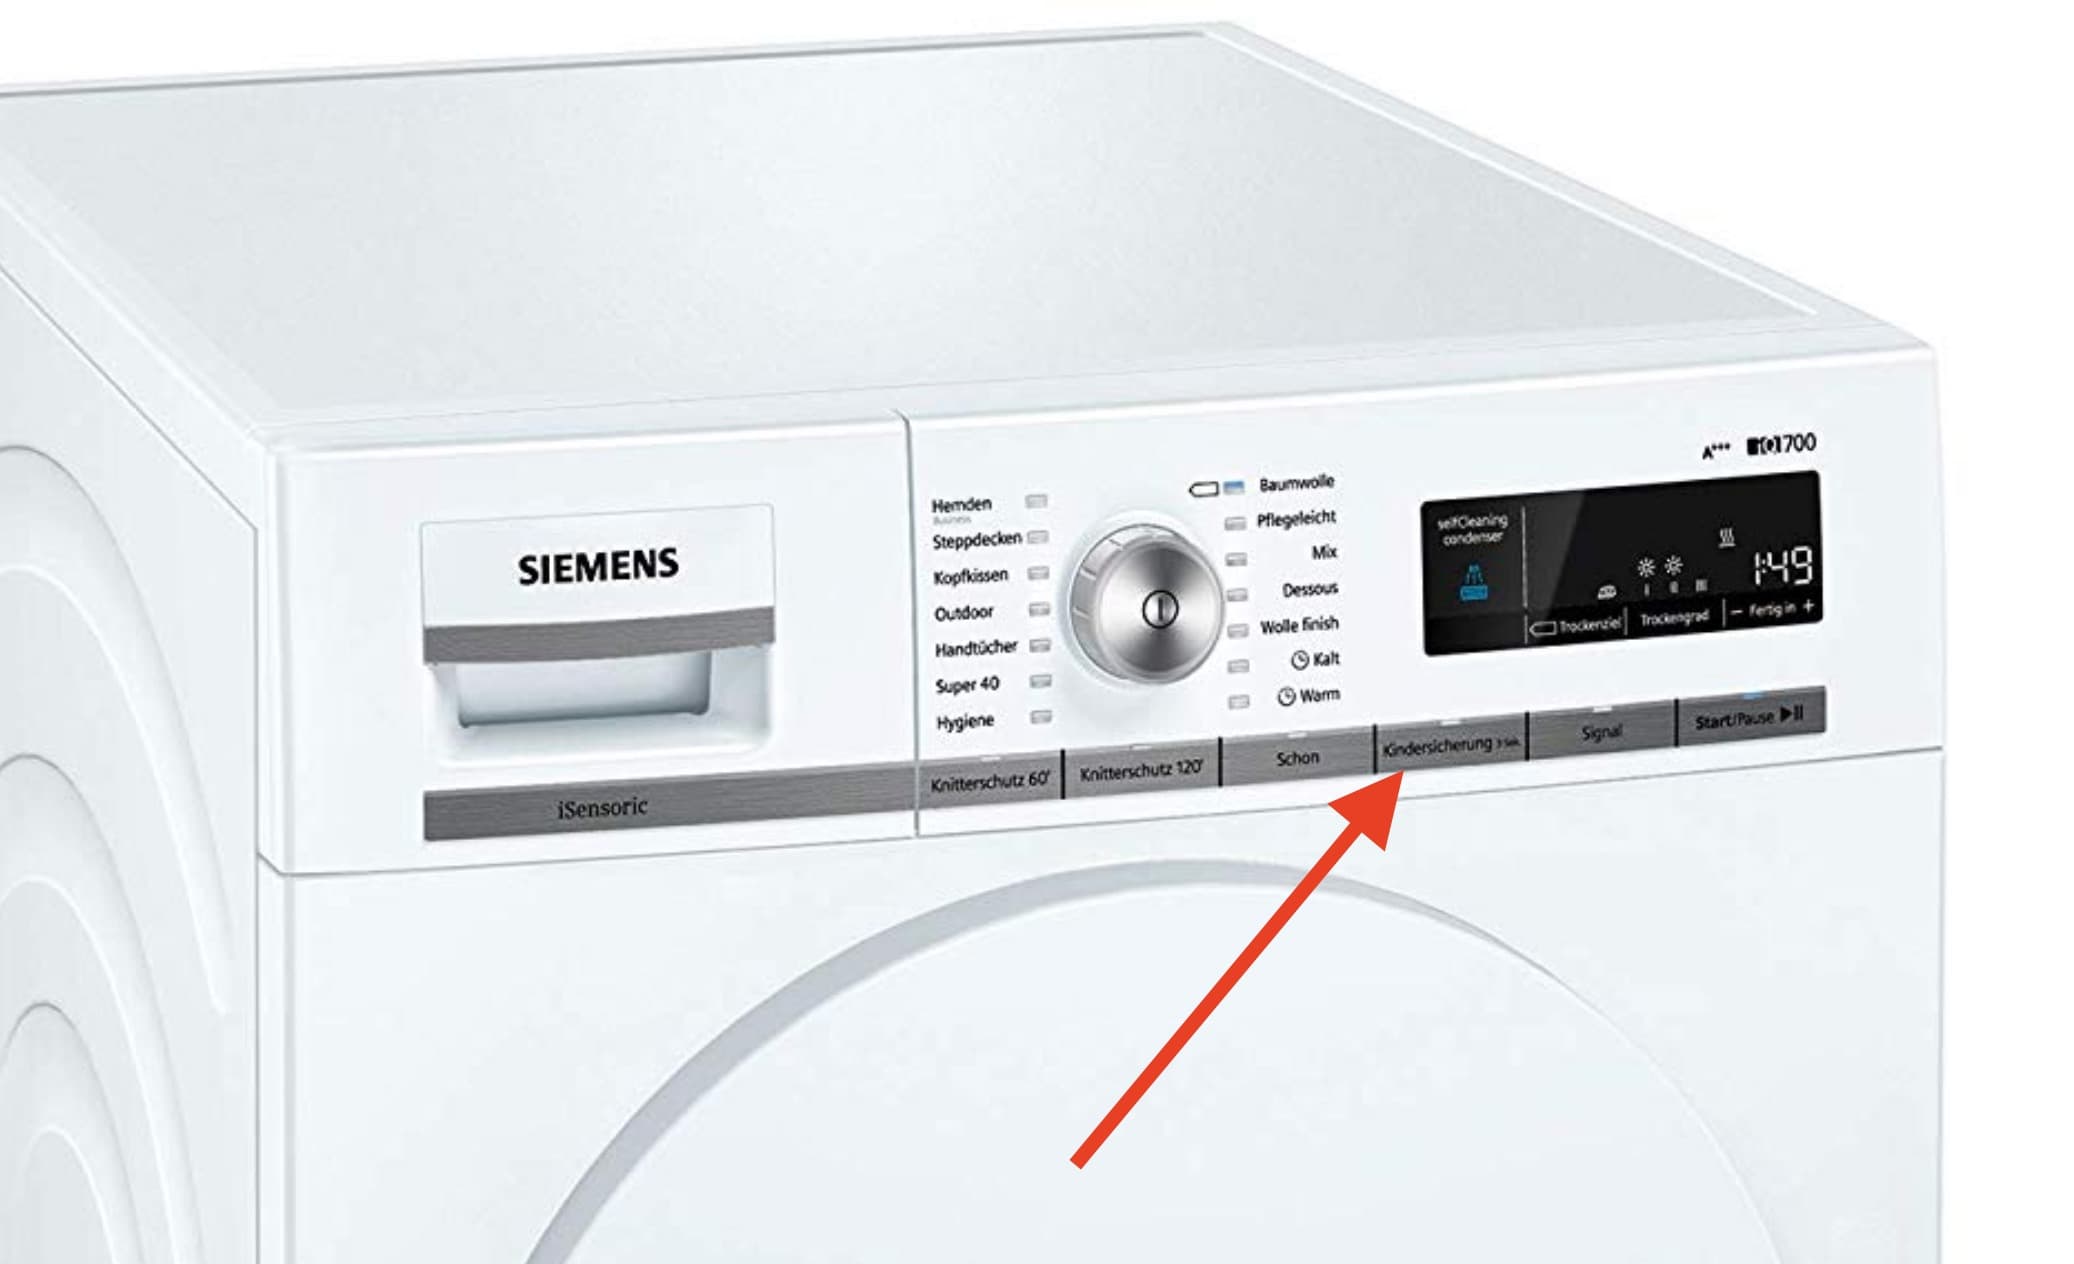 Siemens iq500 trockner bedienungsanleitung pdf